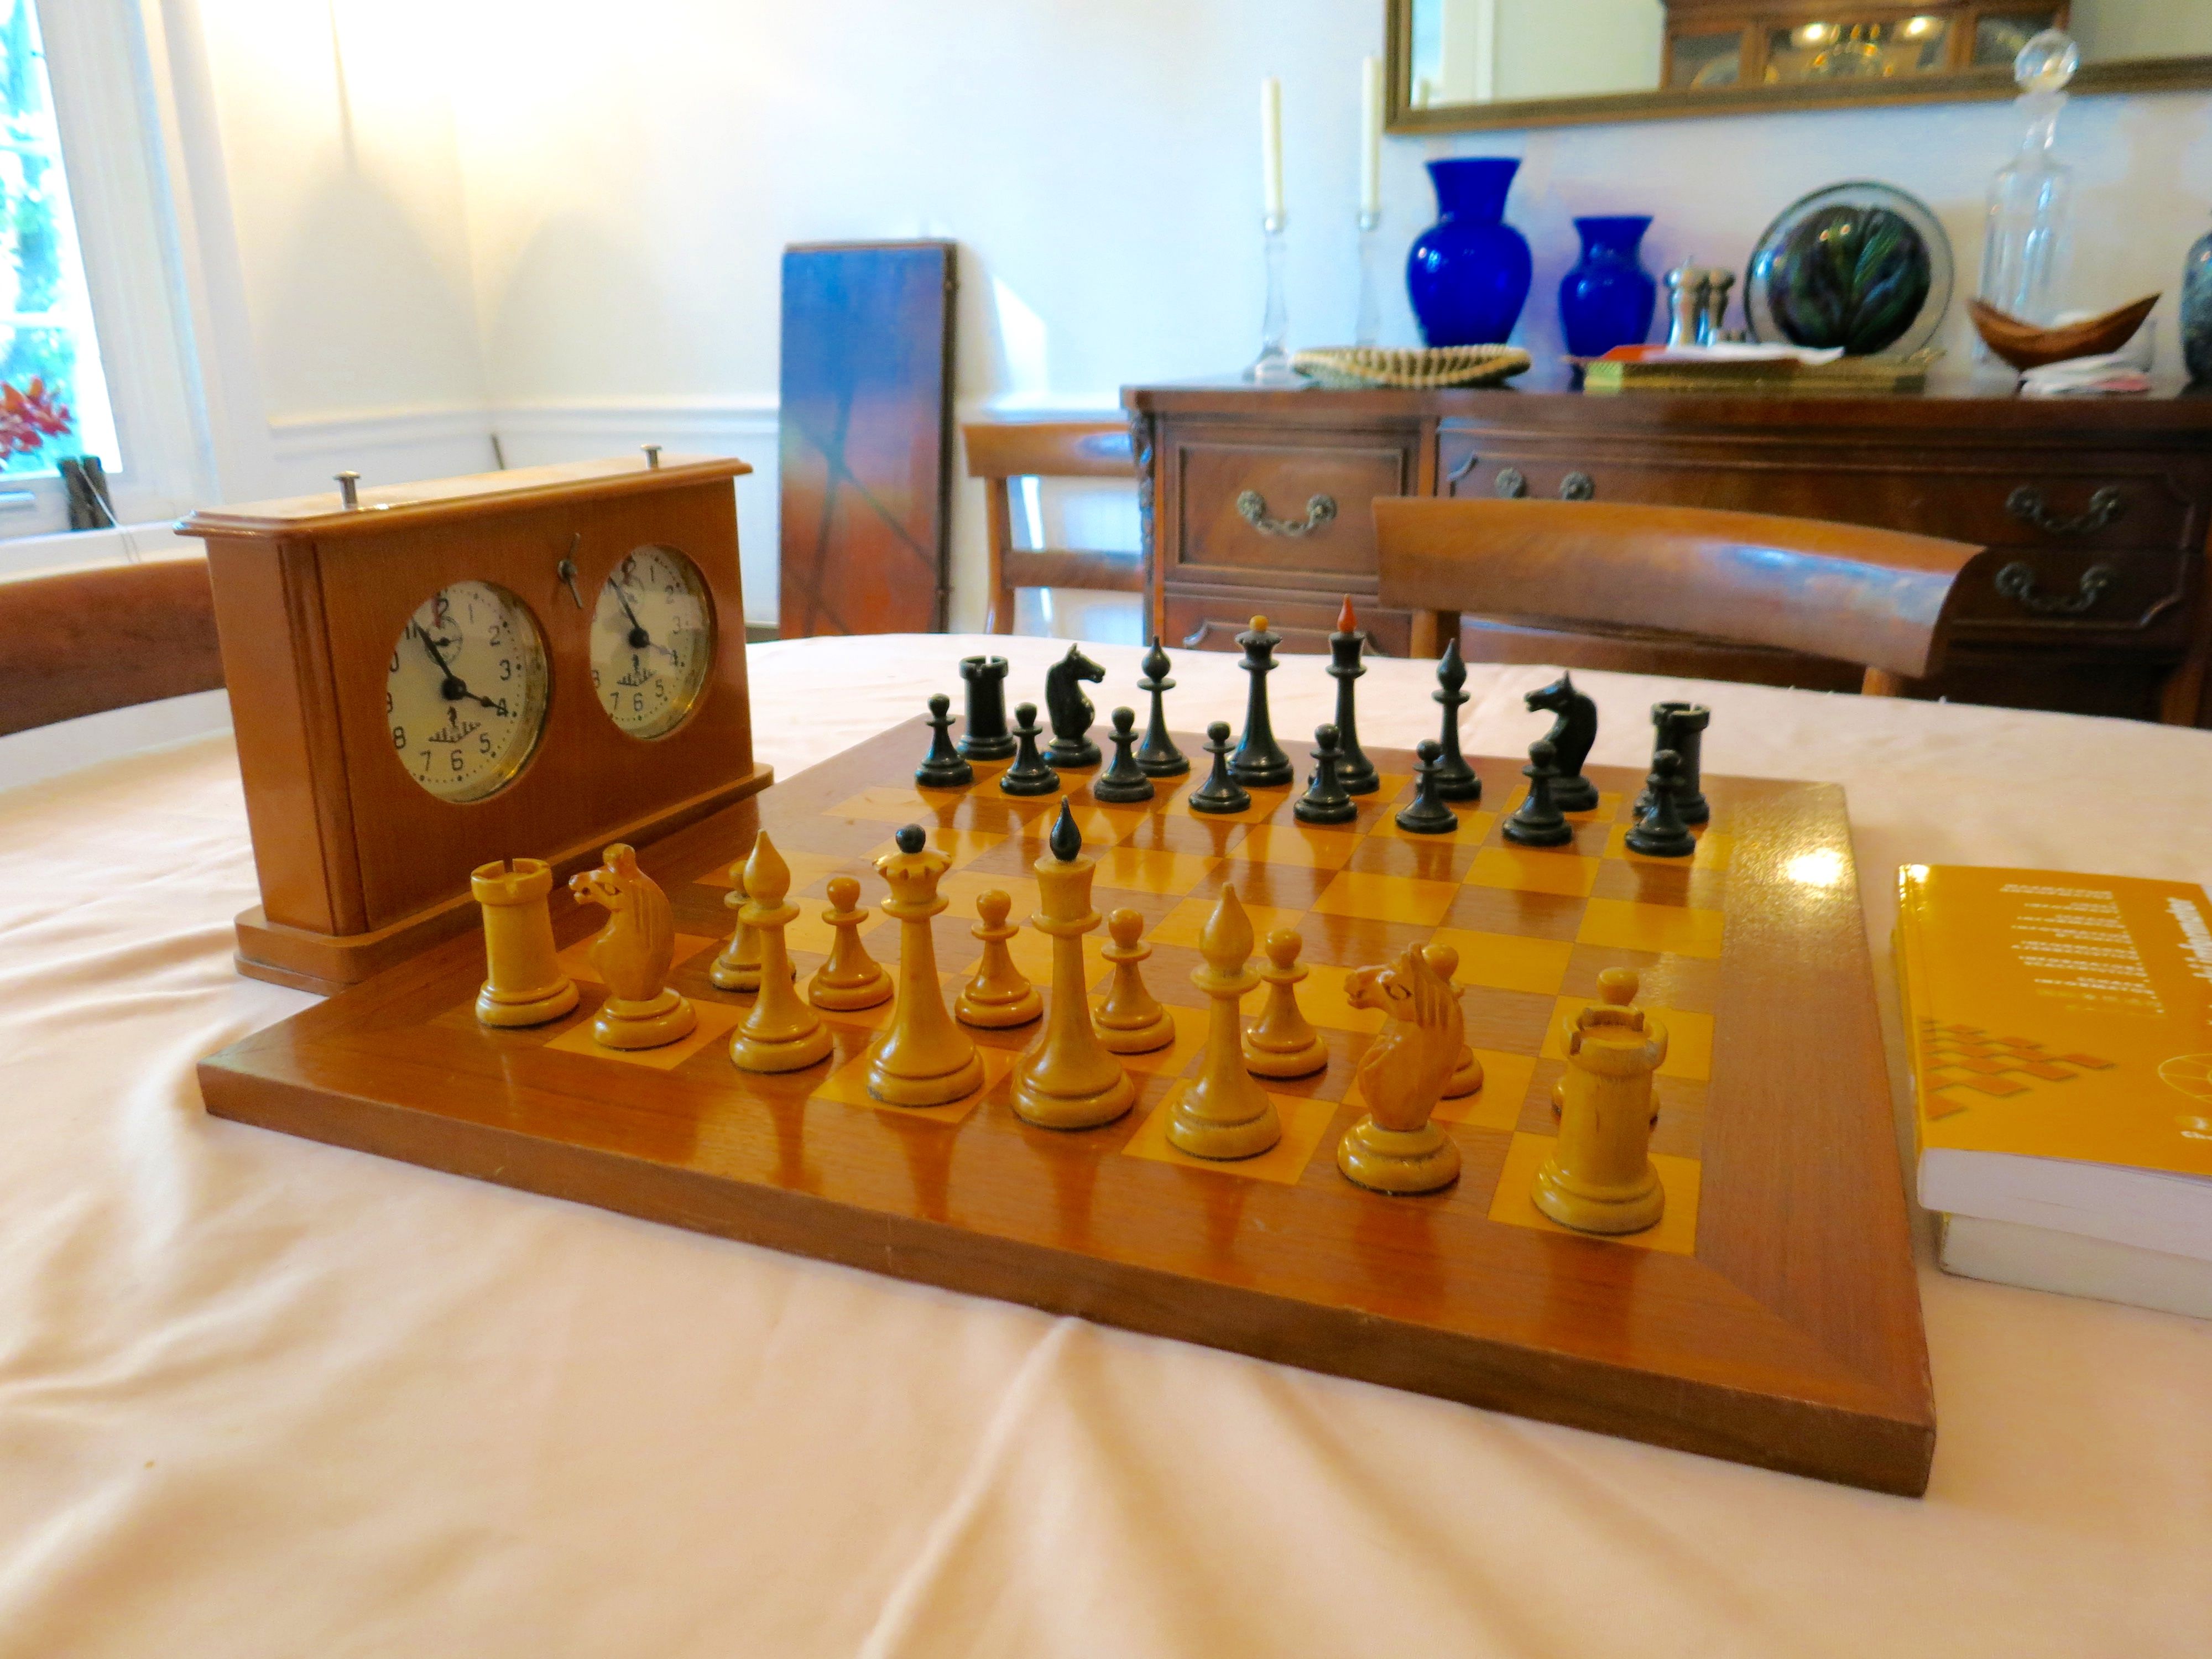 Jogos do Sesi: entenda as diferenças entre o xadrez rápido e o